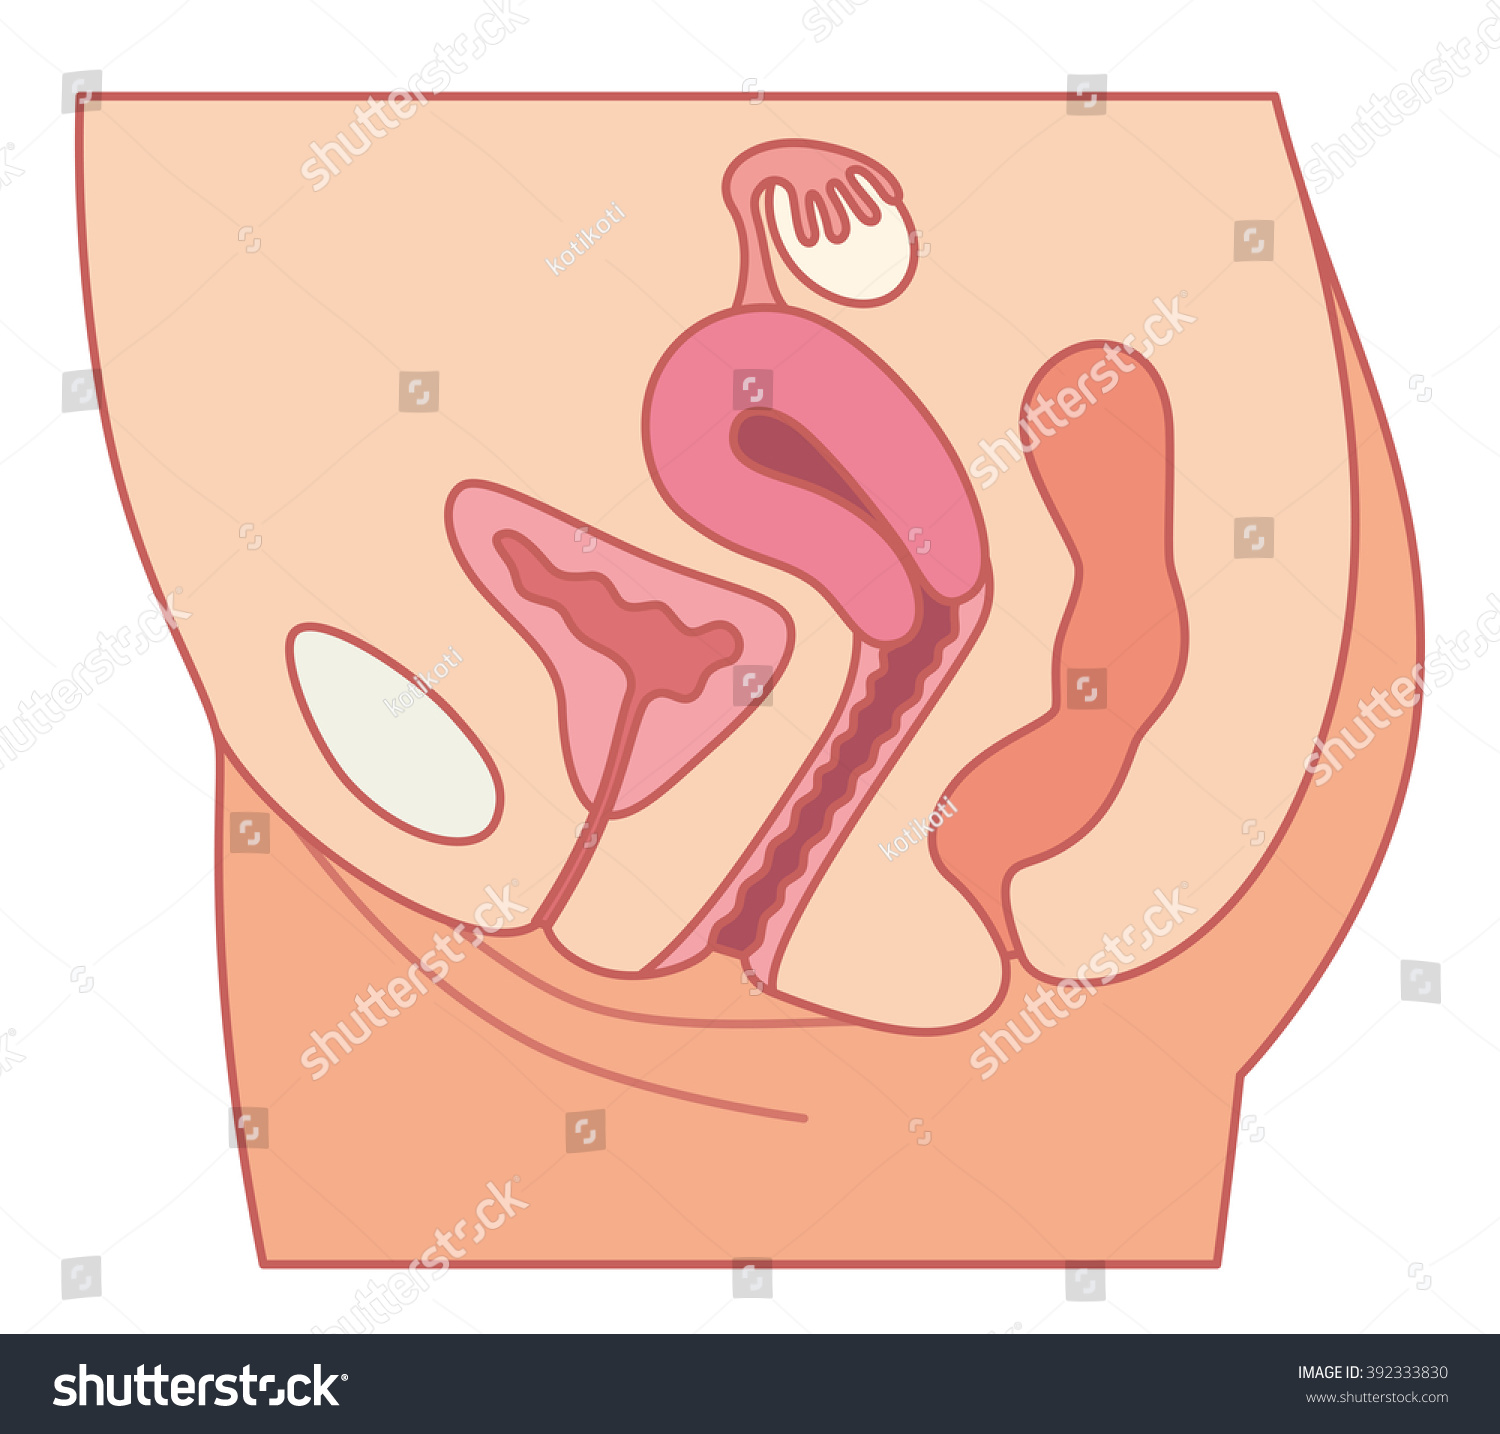 下腹部の女性の断面図と輪郭図 のイラスト素材